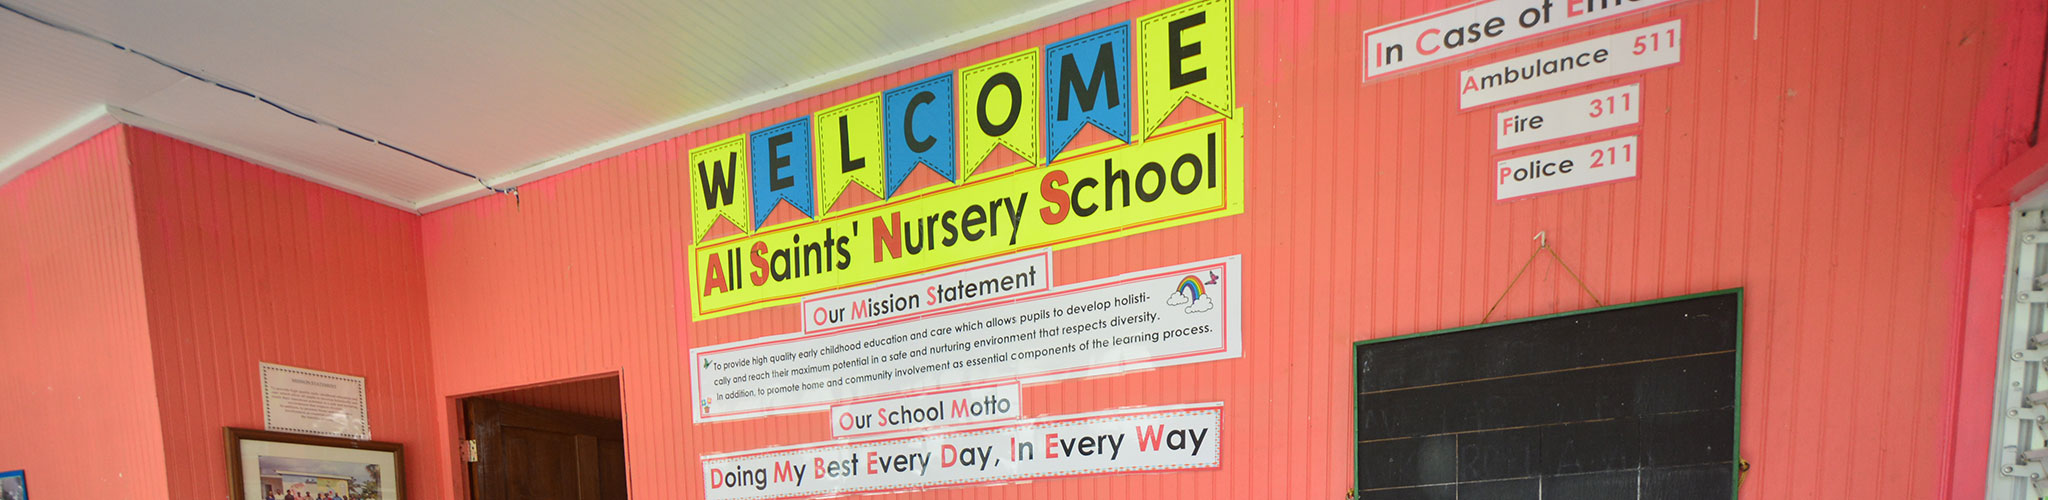 All Saints' Nursery School